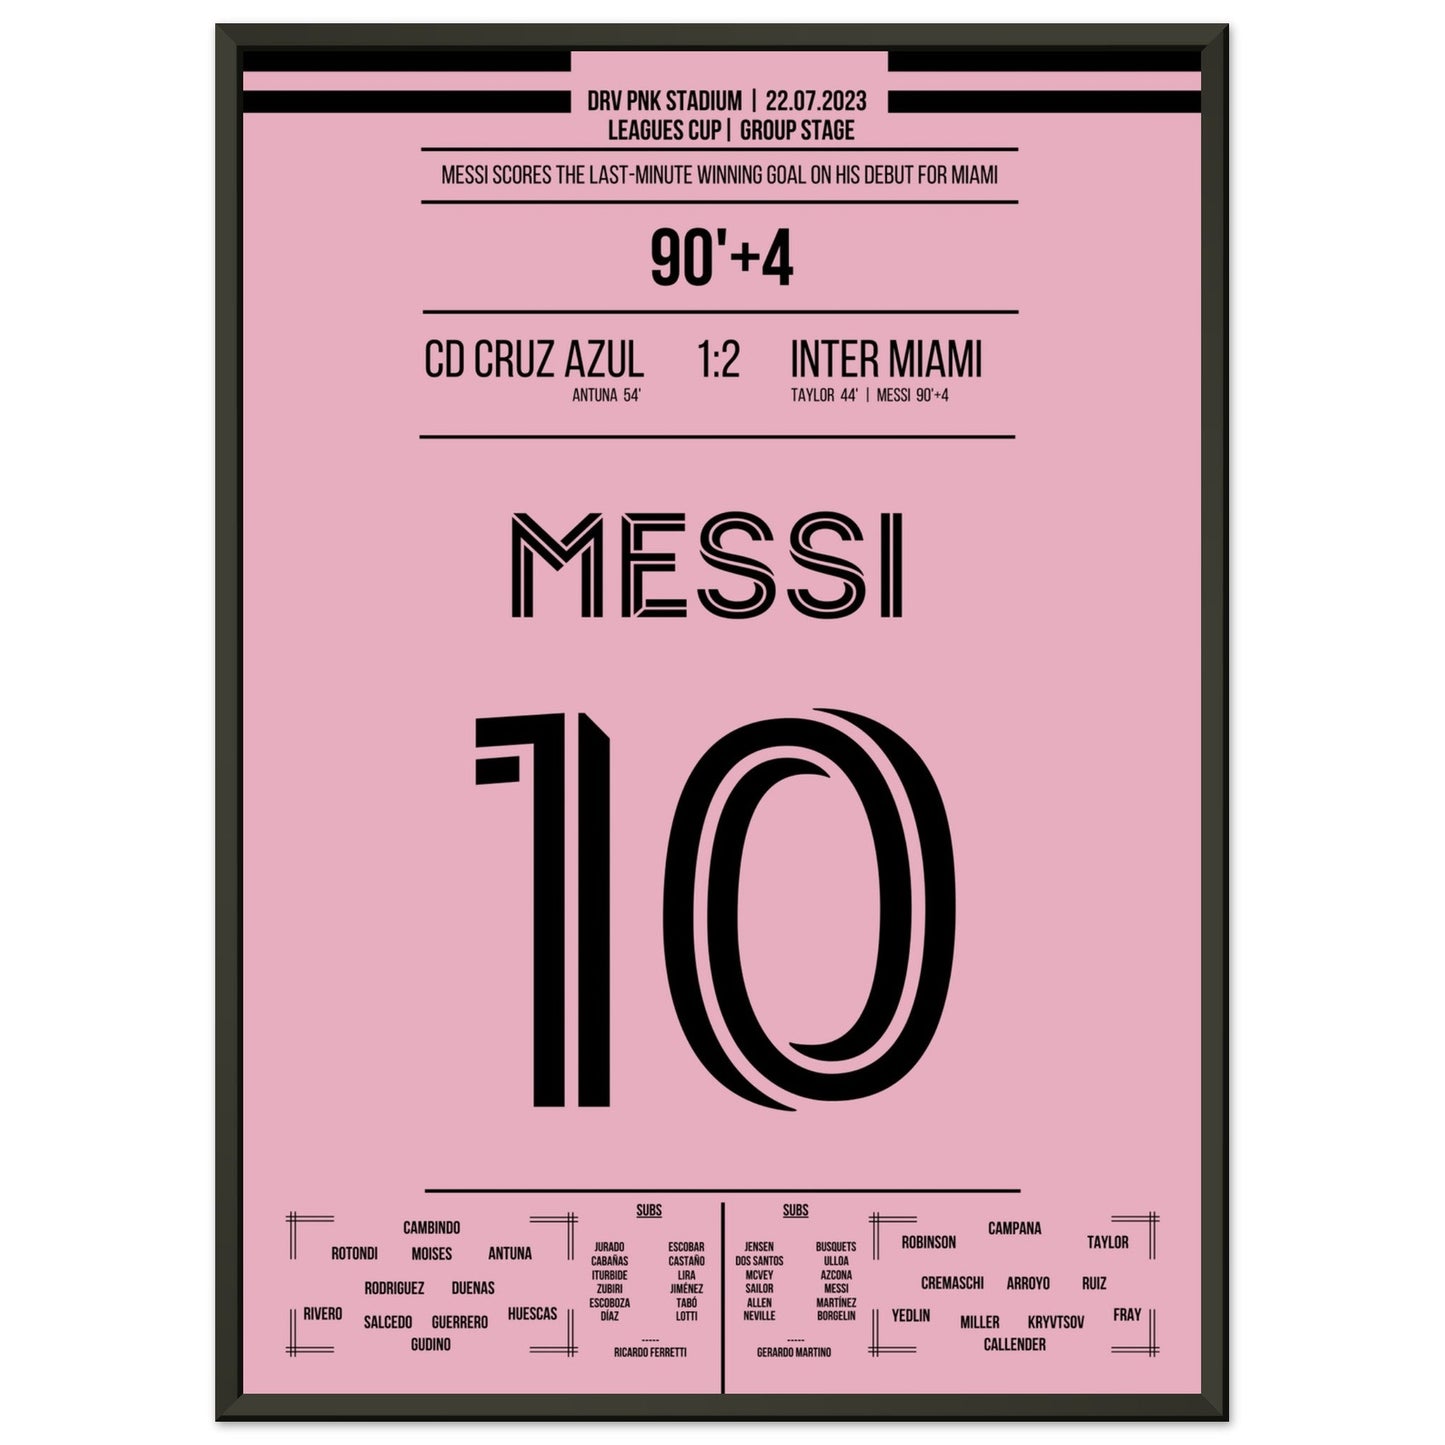 Messi's Siegtreffer beim Debüt für Miami